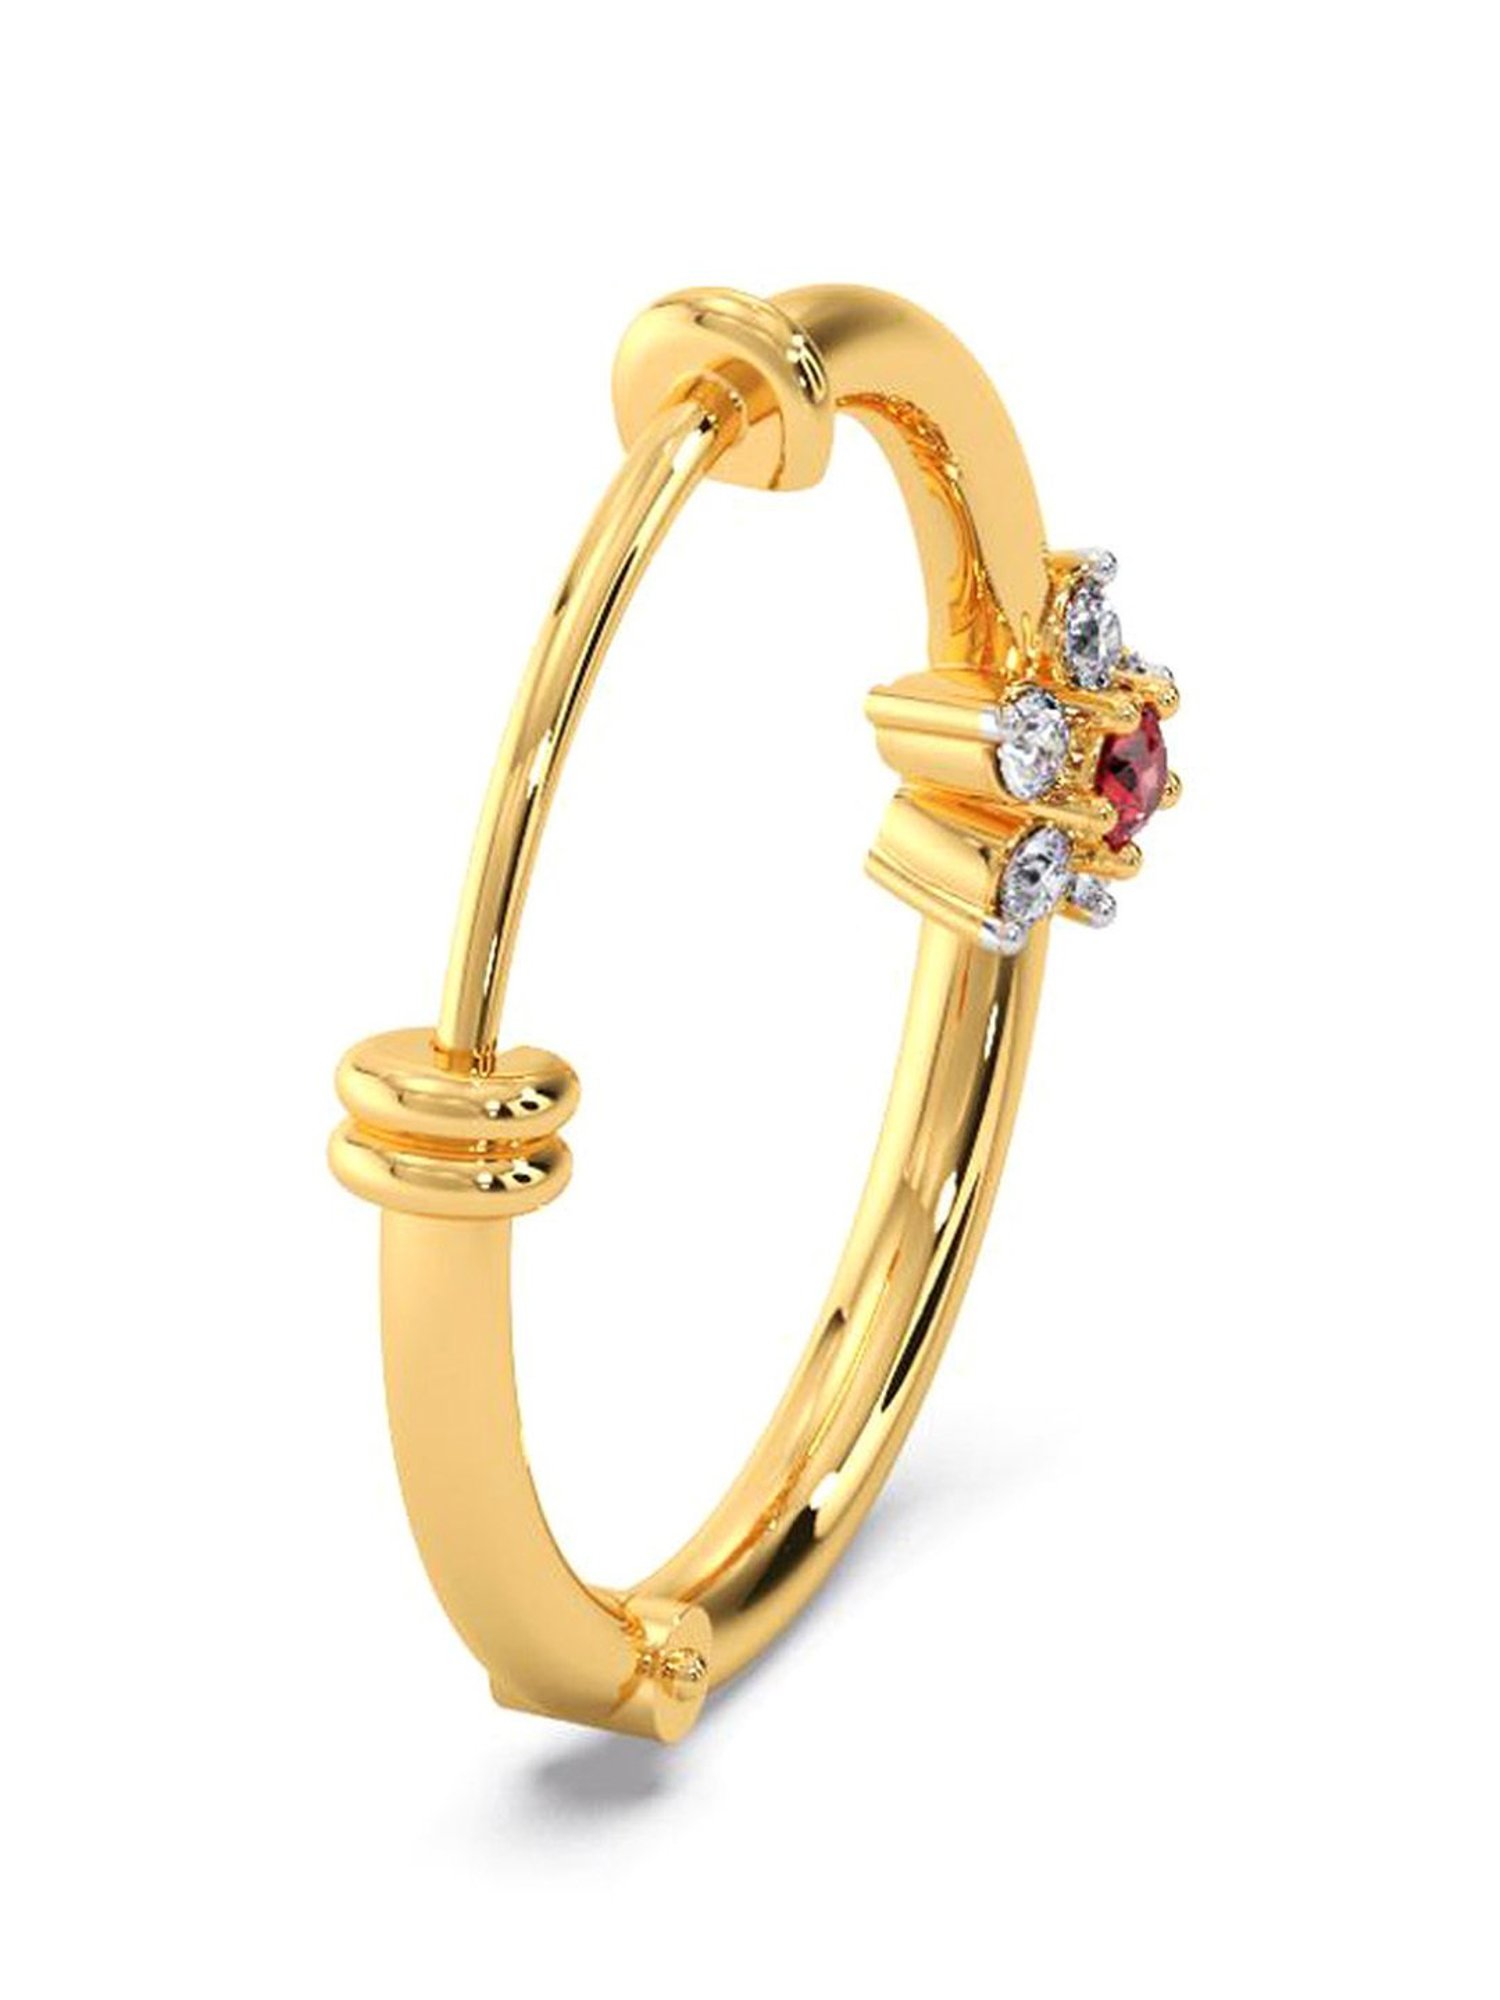 Dalaa Nose Ring // 14kt Gold Metal Nose Ring & Septum Ring